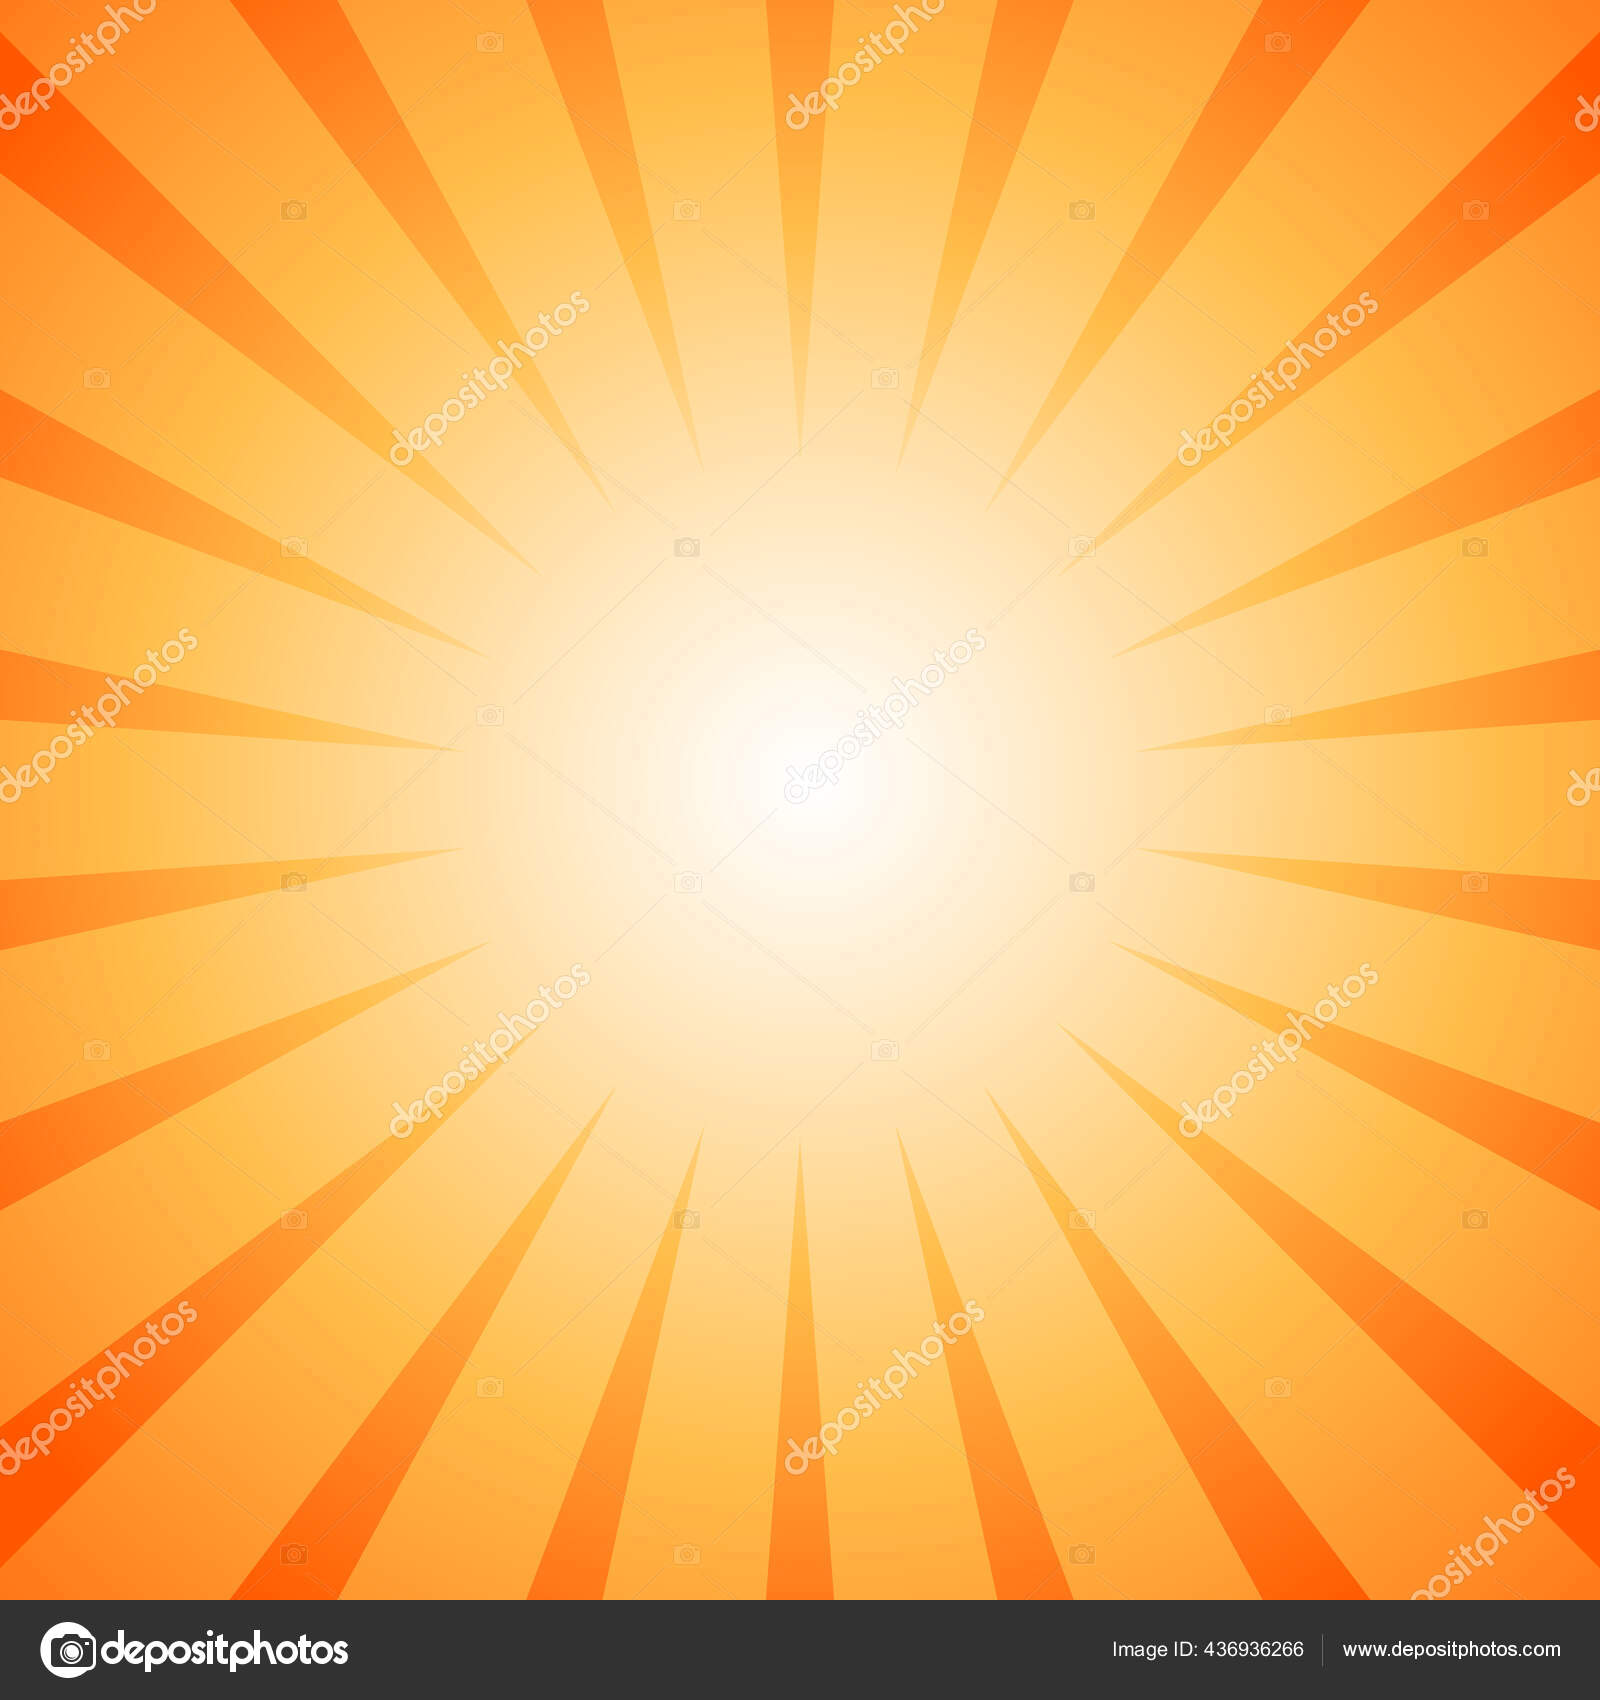 日光の光線の背景 明るいオレンジ色のバーストの背景 ベクトルイラスト 太陽光線のサンバースト壁紙 レトロな明るい背景 スターバースト ポスターやプラカード ストックベクター C Nemaria